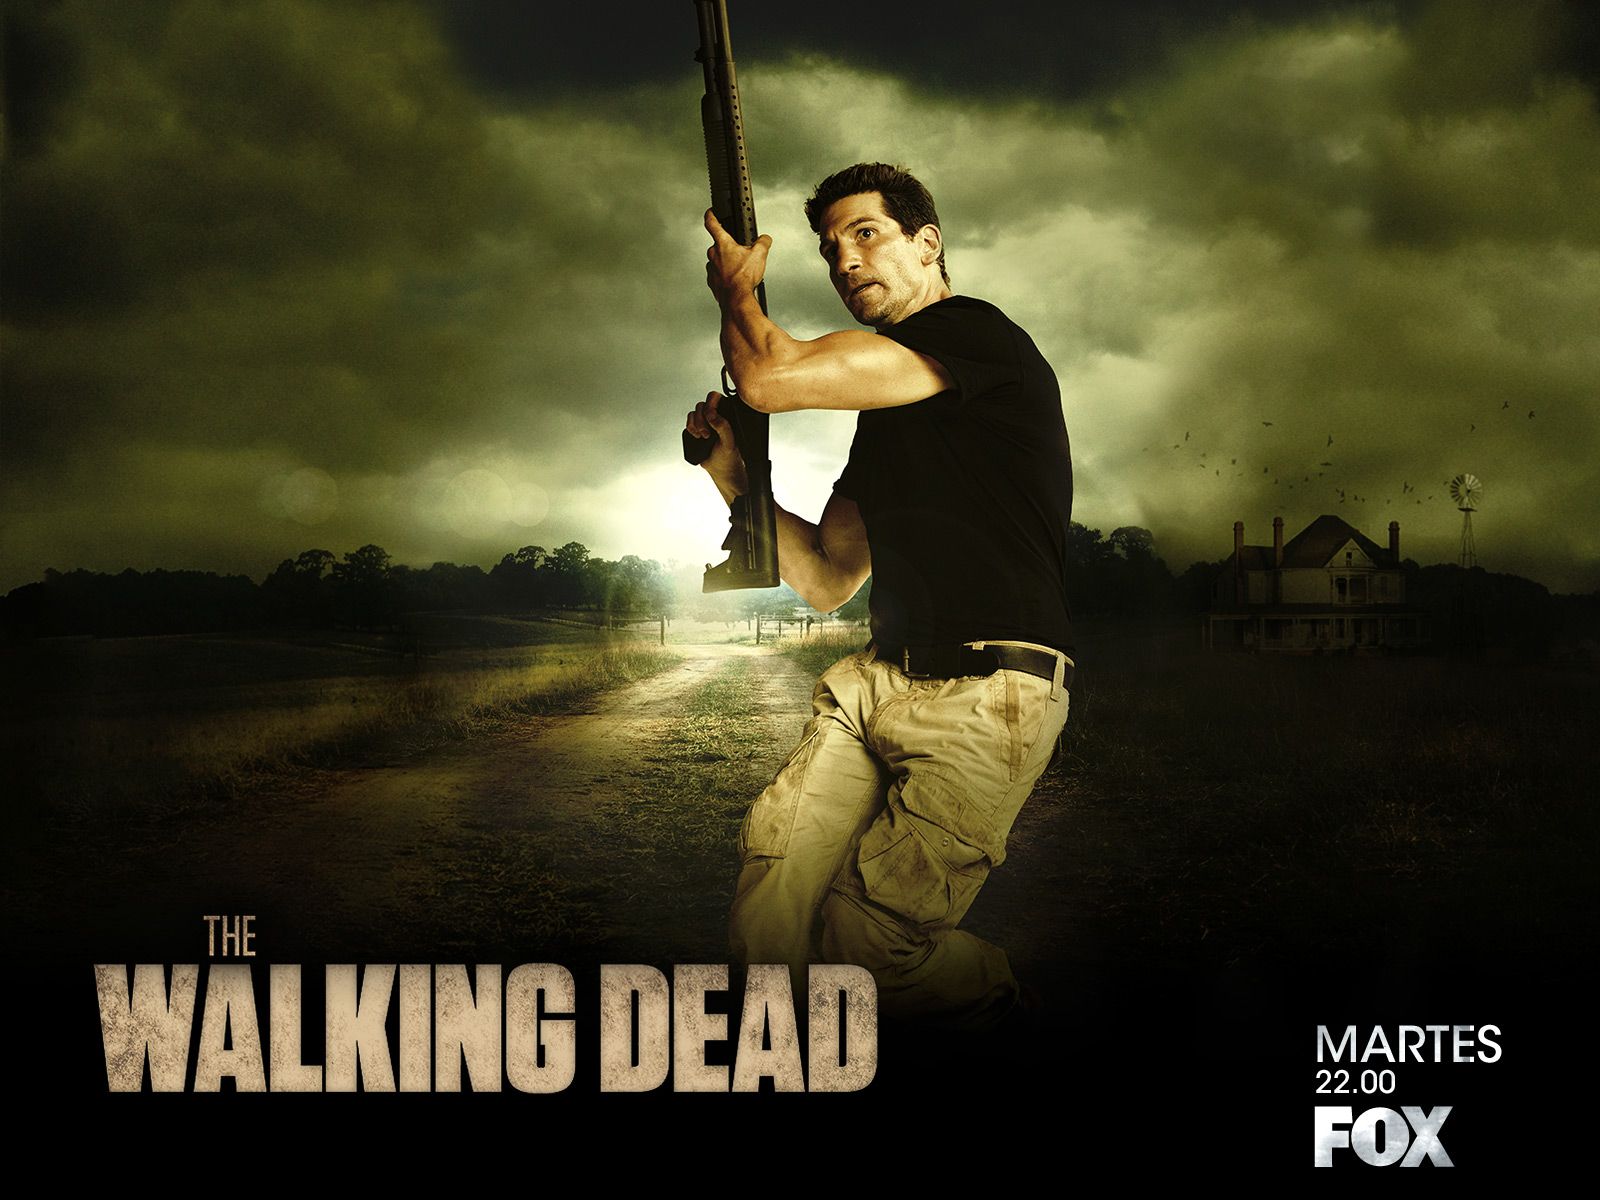 The Walking Dead Wallpaper: Shane Walsh. Walking dead daryl, The walking dead, Fear the walking dead